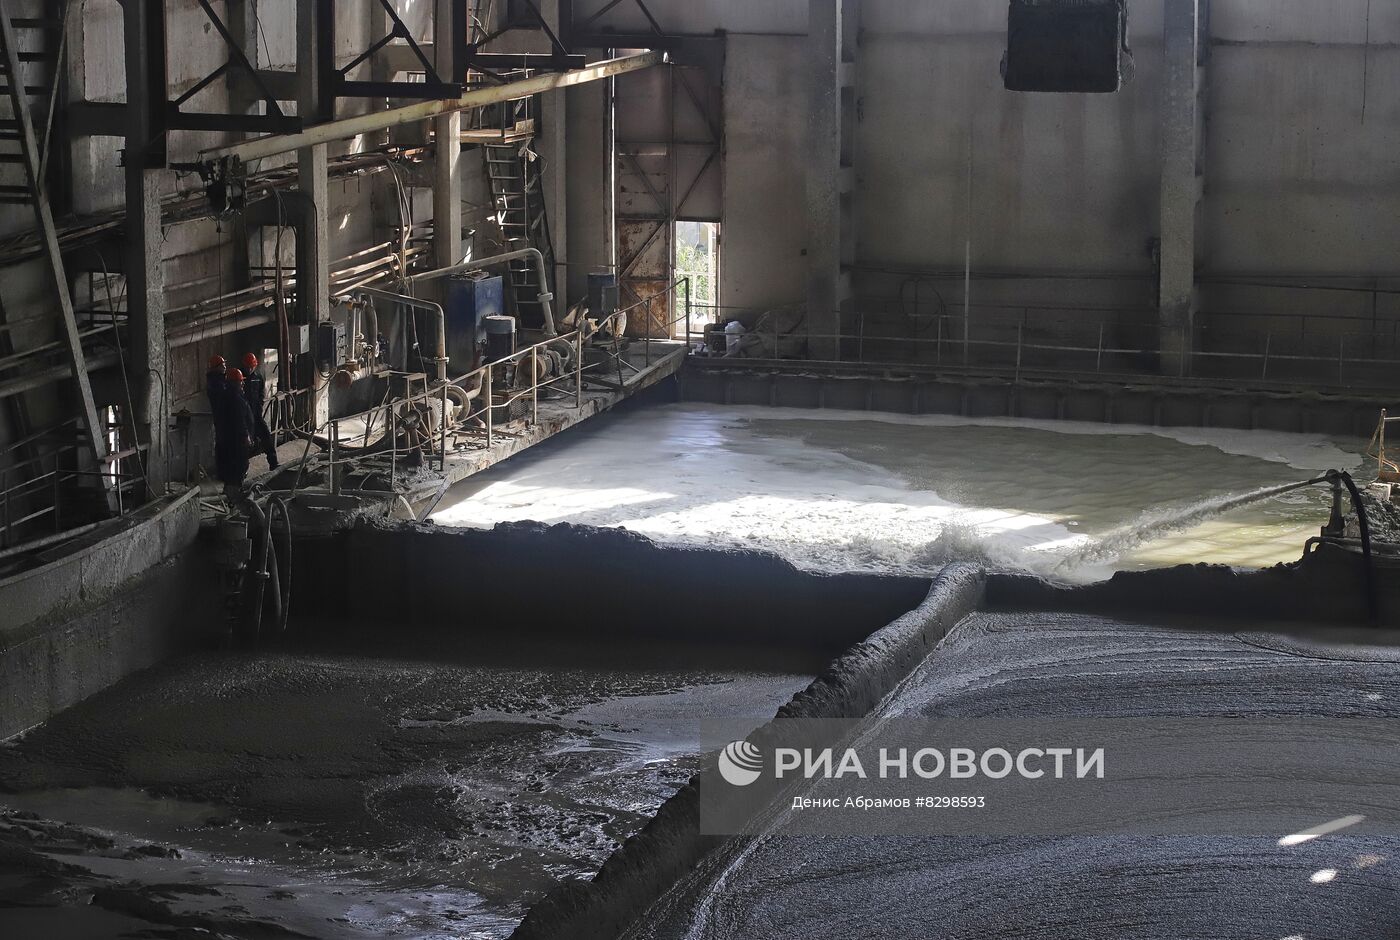 Производство удобрений на предприятии "Алмаз удобрения" в Ставропольском крае